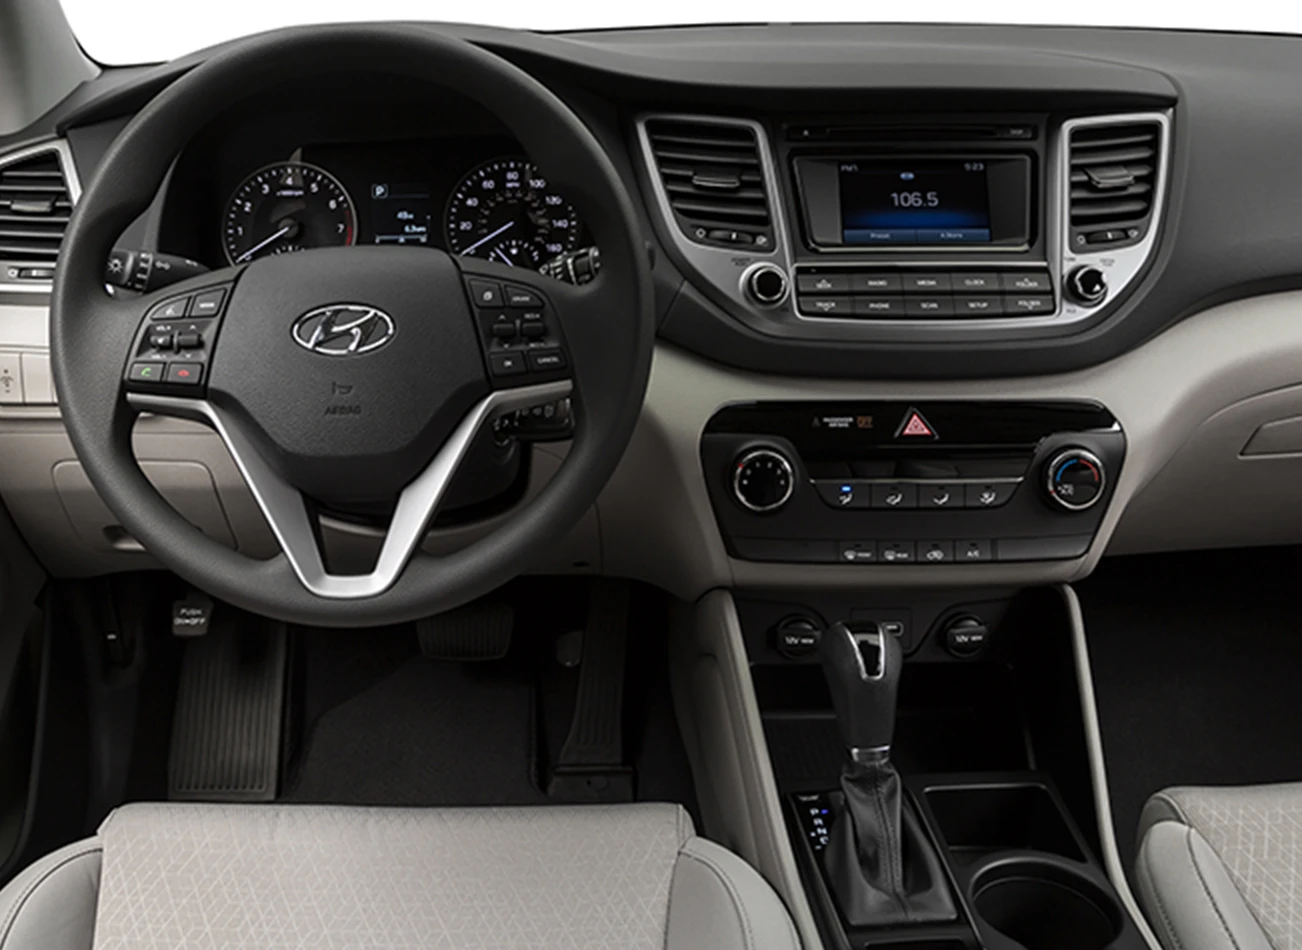 2018 Hyundai Tucson: Reviews, Photos, and More: Reasons to Buy #4 | CarMax